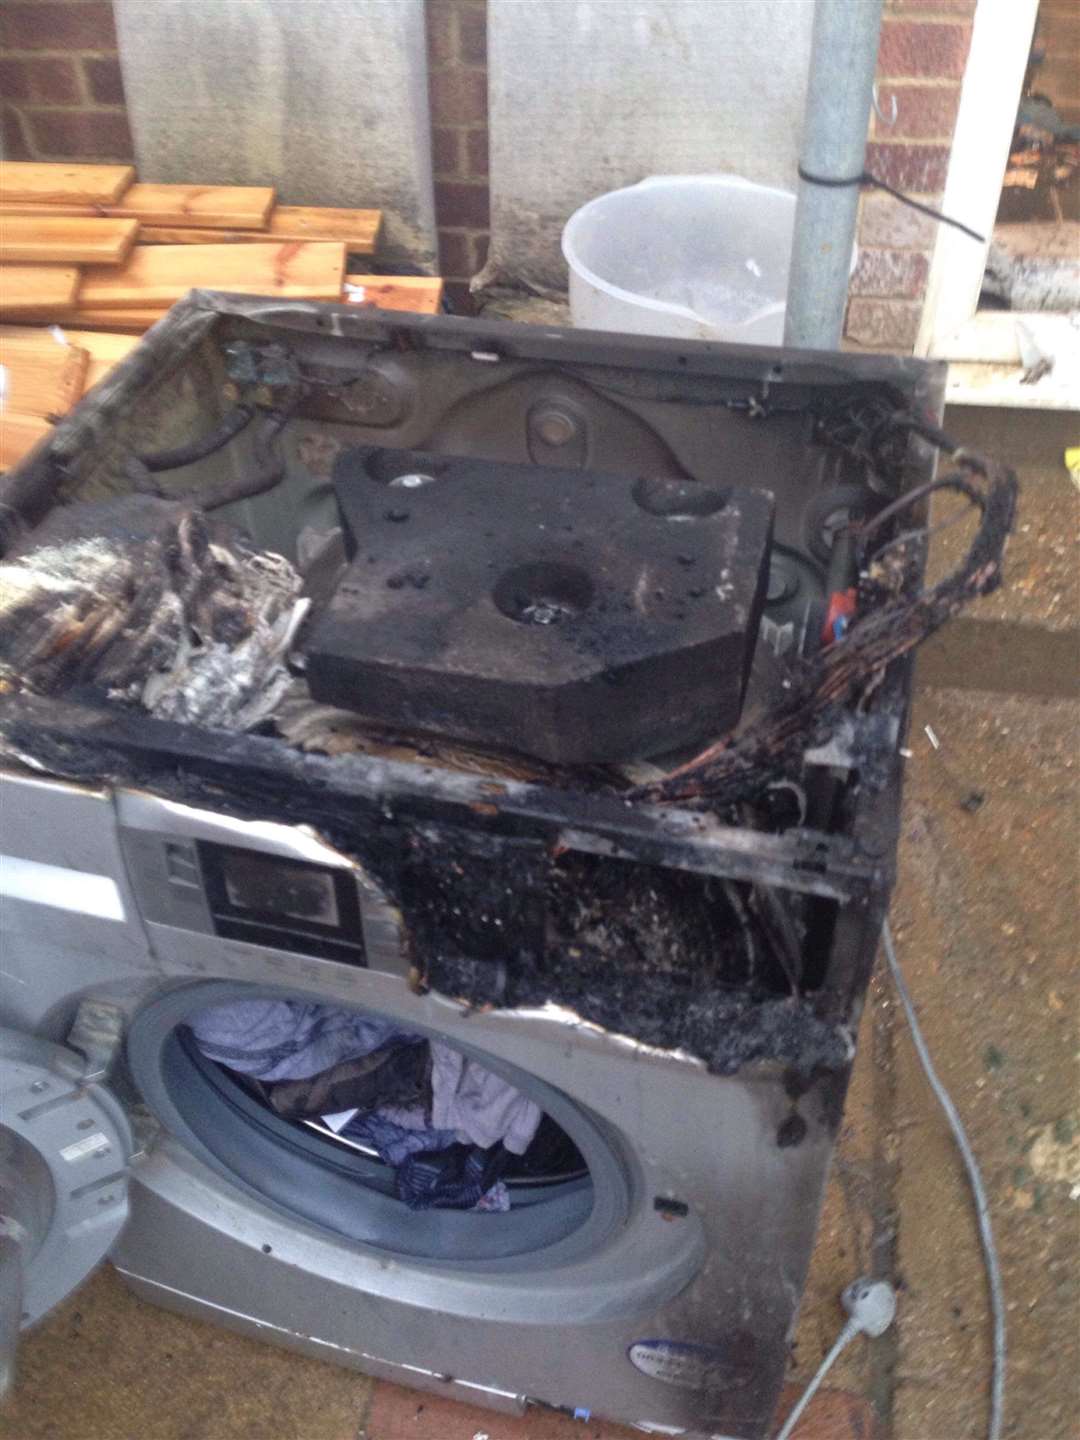 The washing machine exploded in Rainham